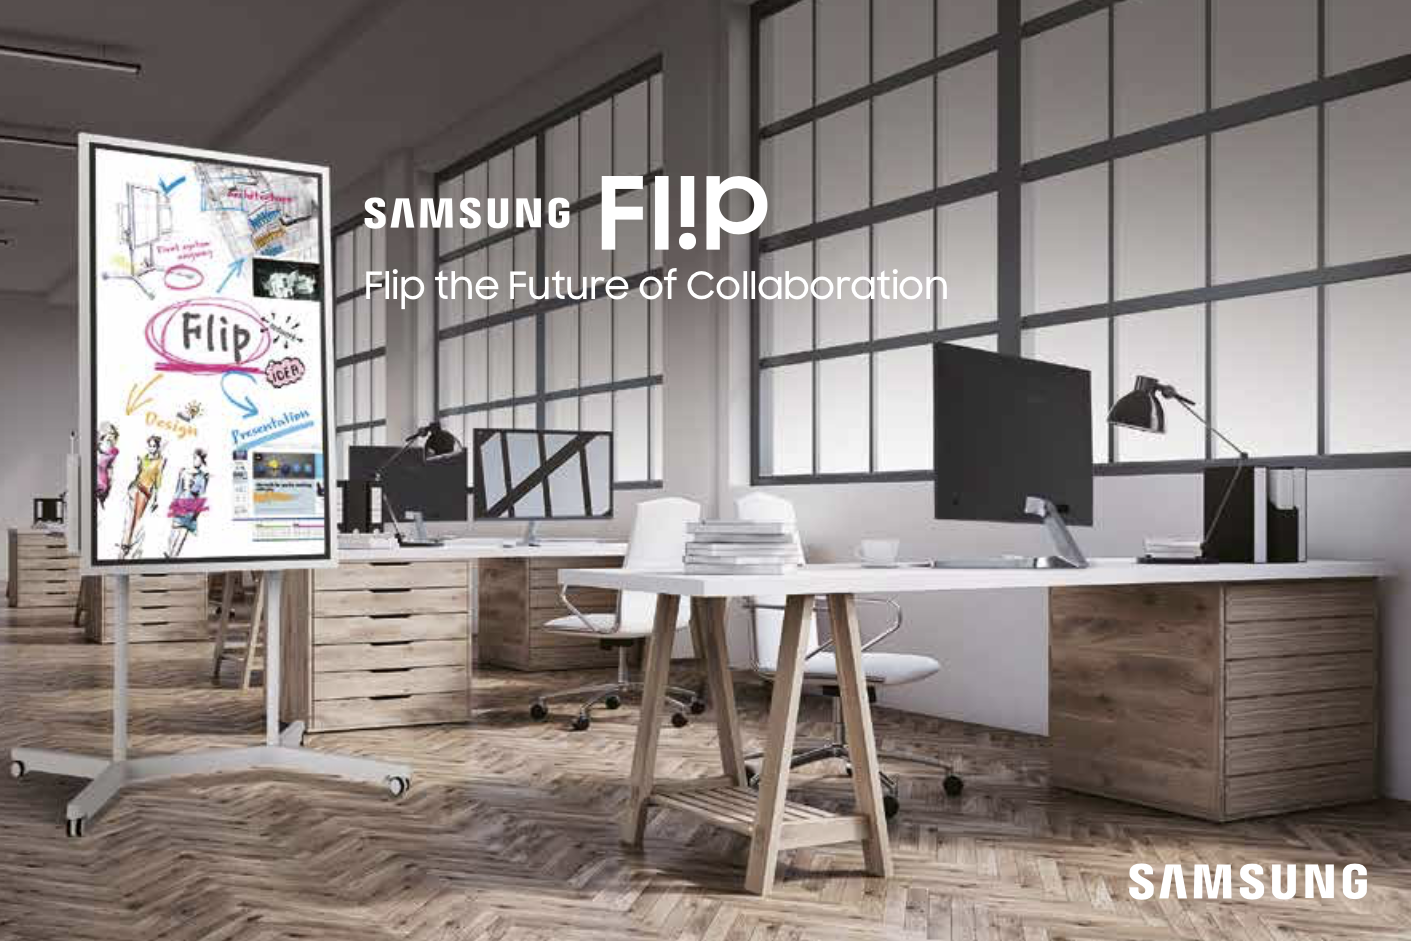 Samsung FLip